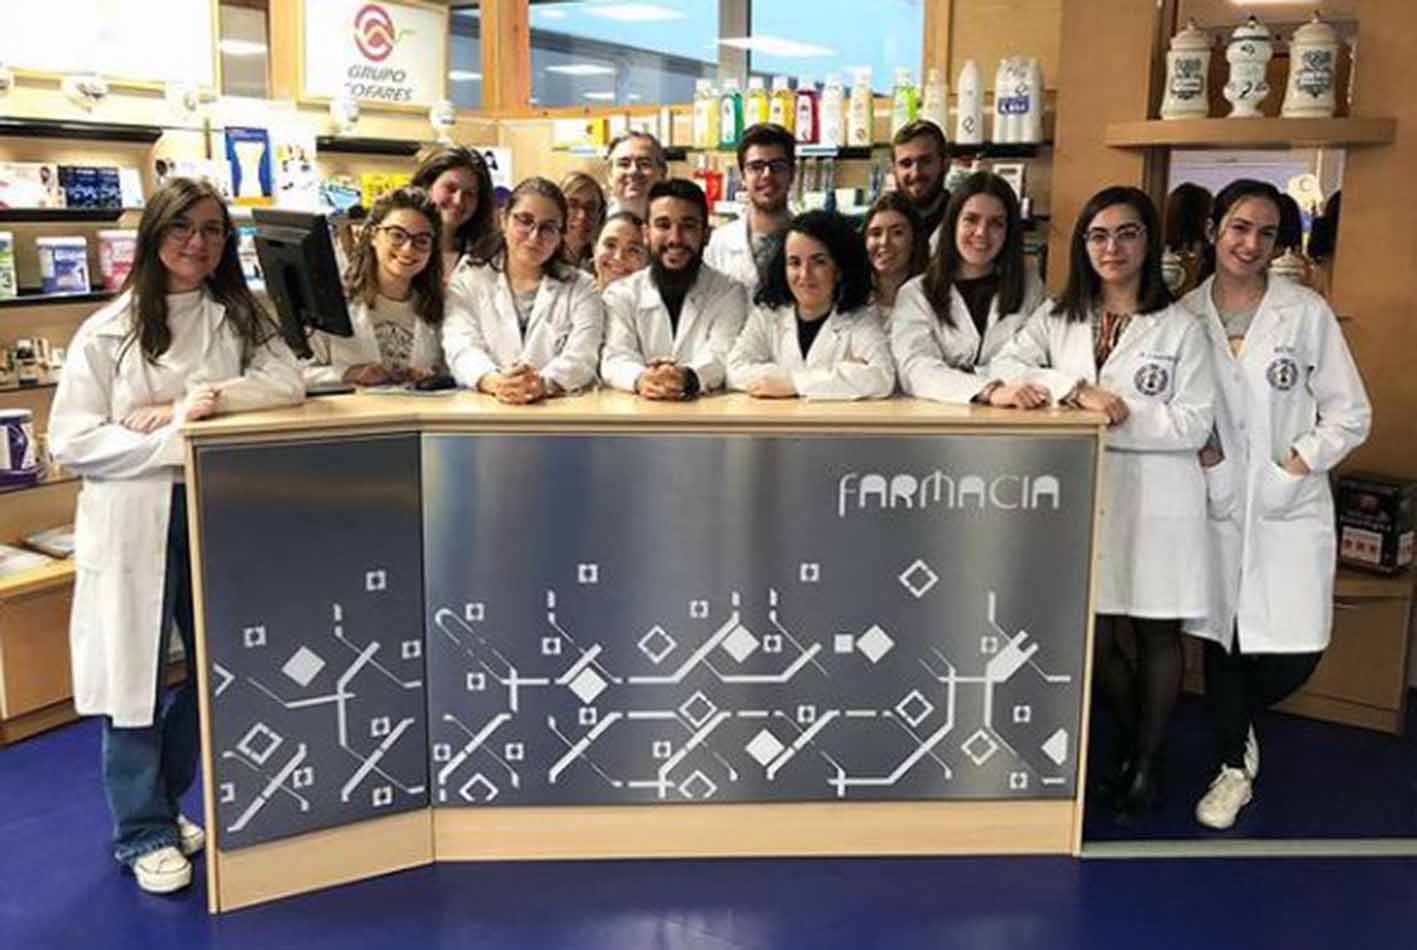 Egresados de la Facultad de Farmacia de Albacete; Mario Rodenas posa en el centro en la fila superior, con gafas.